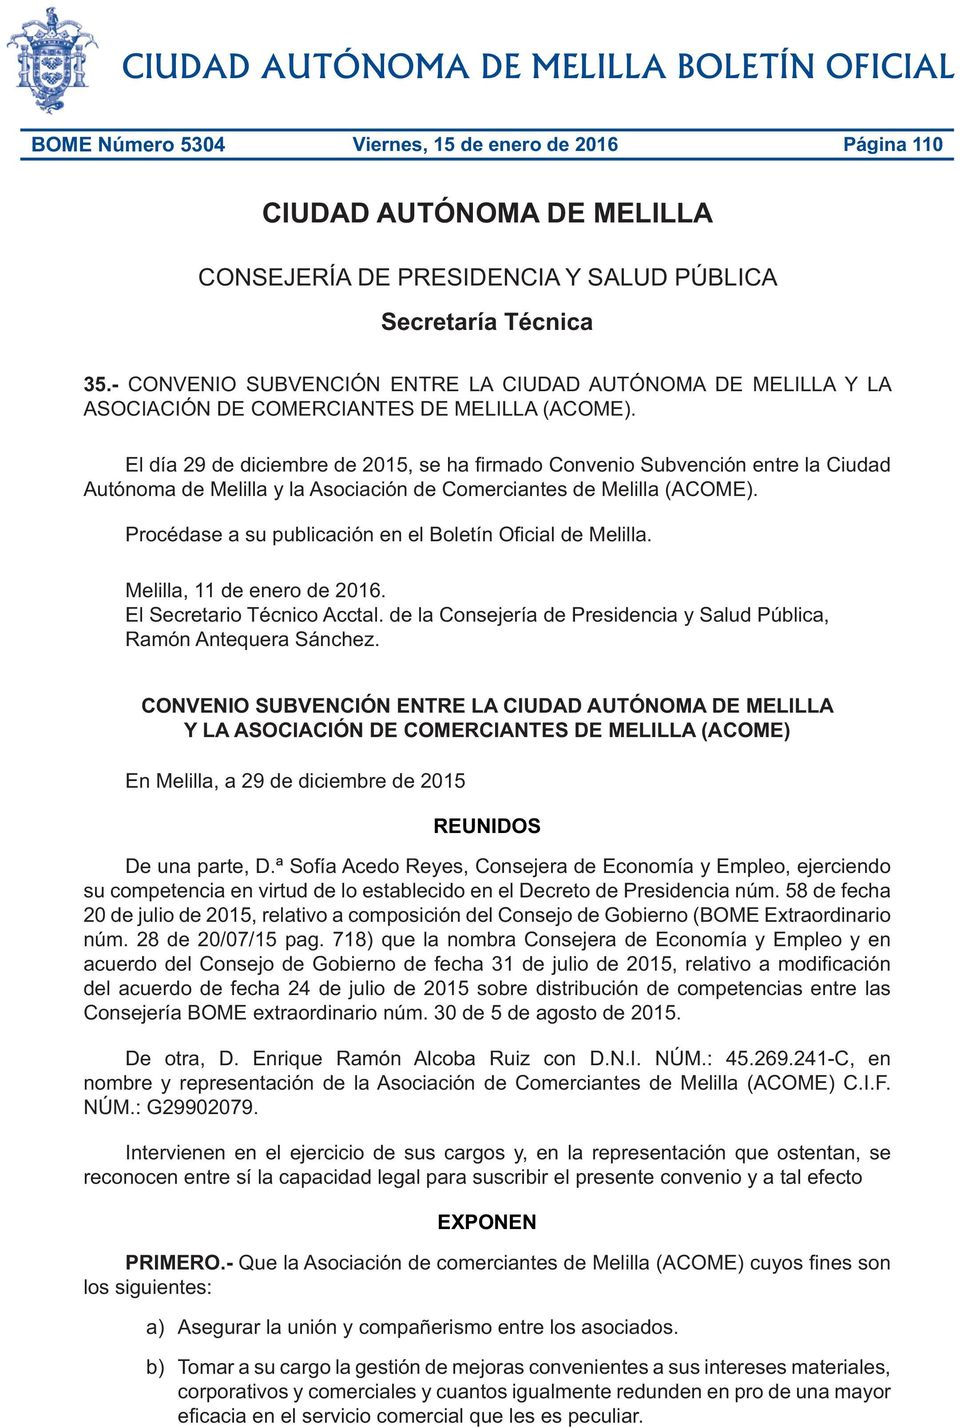 El día 29 de diciembre de 2015, se ha firmado Convenio Subvención entre la Ciudad Autónoma de Melilla y la Asociación de Comerciantes de Melilla (ACOME).